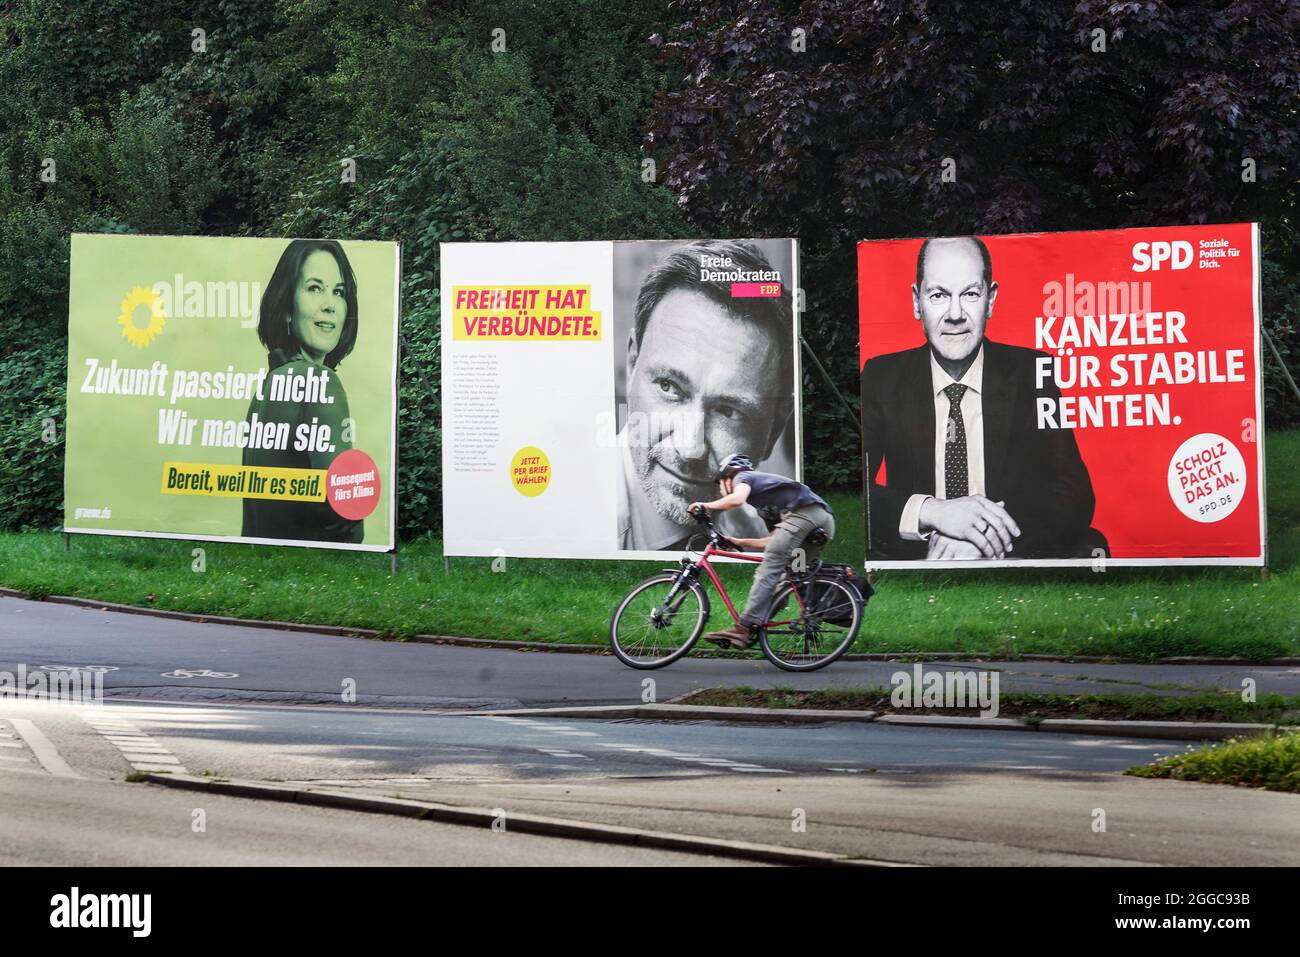 Bundestag 2021, Wahlplakate der Parteien zur Bundesdahl am 26.9.2021: DIE GRÜNEN (Annalena Baerbock) , FDP (Christian Lindner) und SPD (OLAF Scholz). Dortmund, 30.08.2021 Banque D'Images